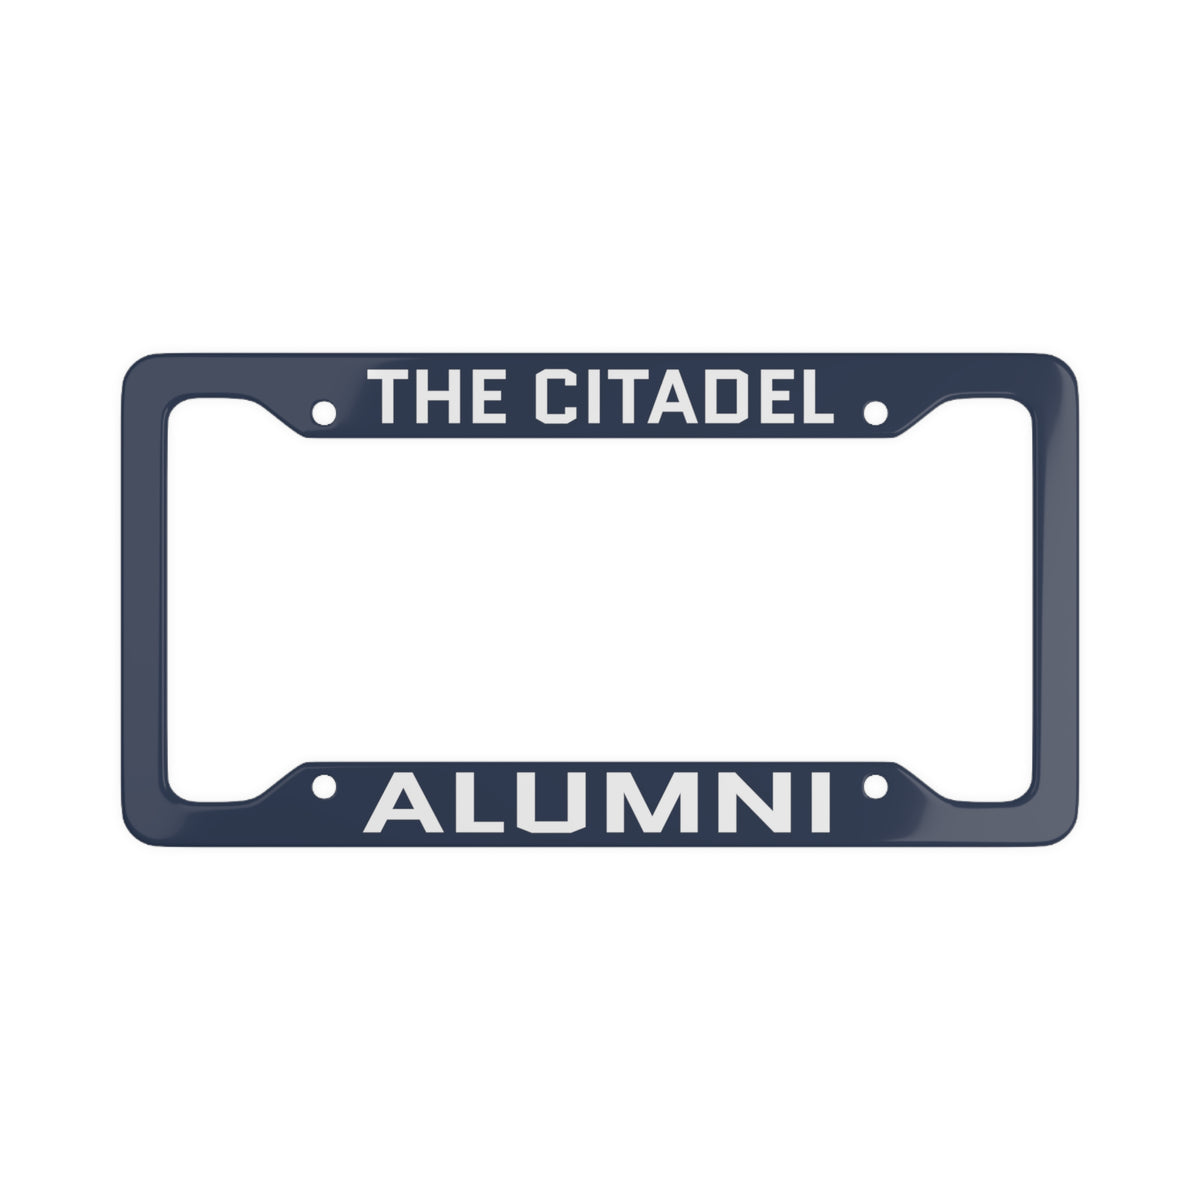 The Citadel, Alumni, License Plate Frame